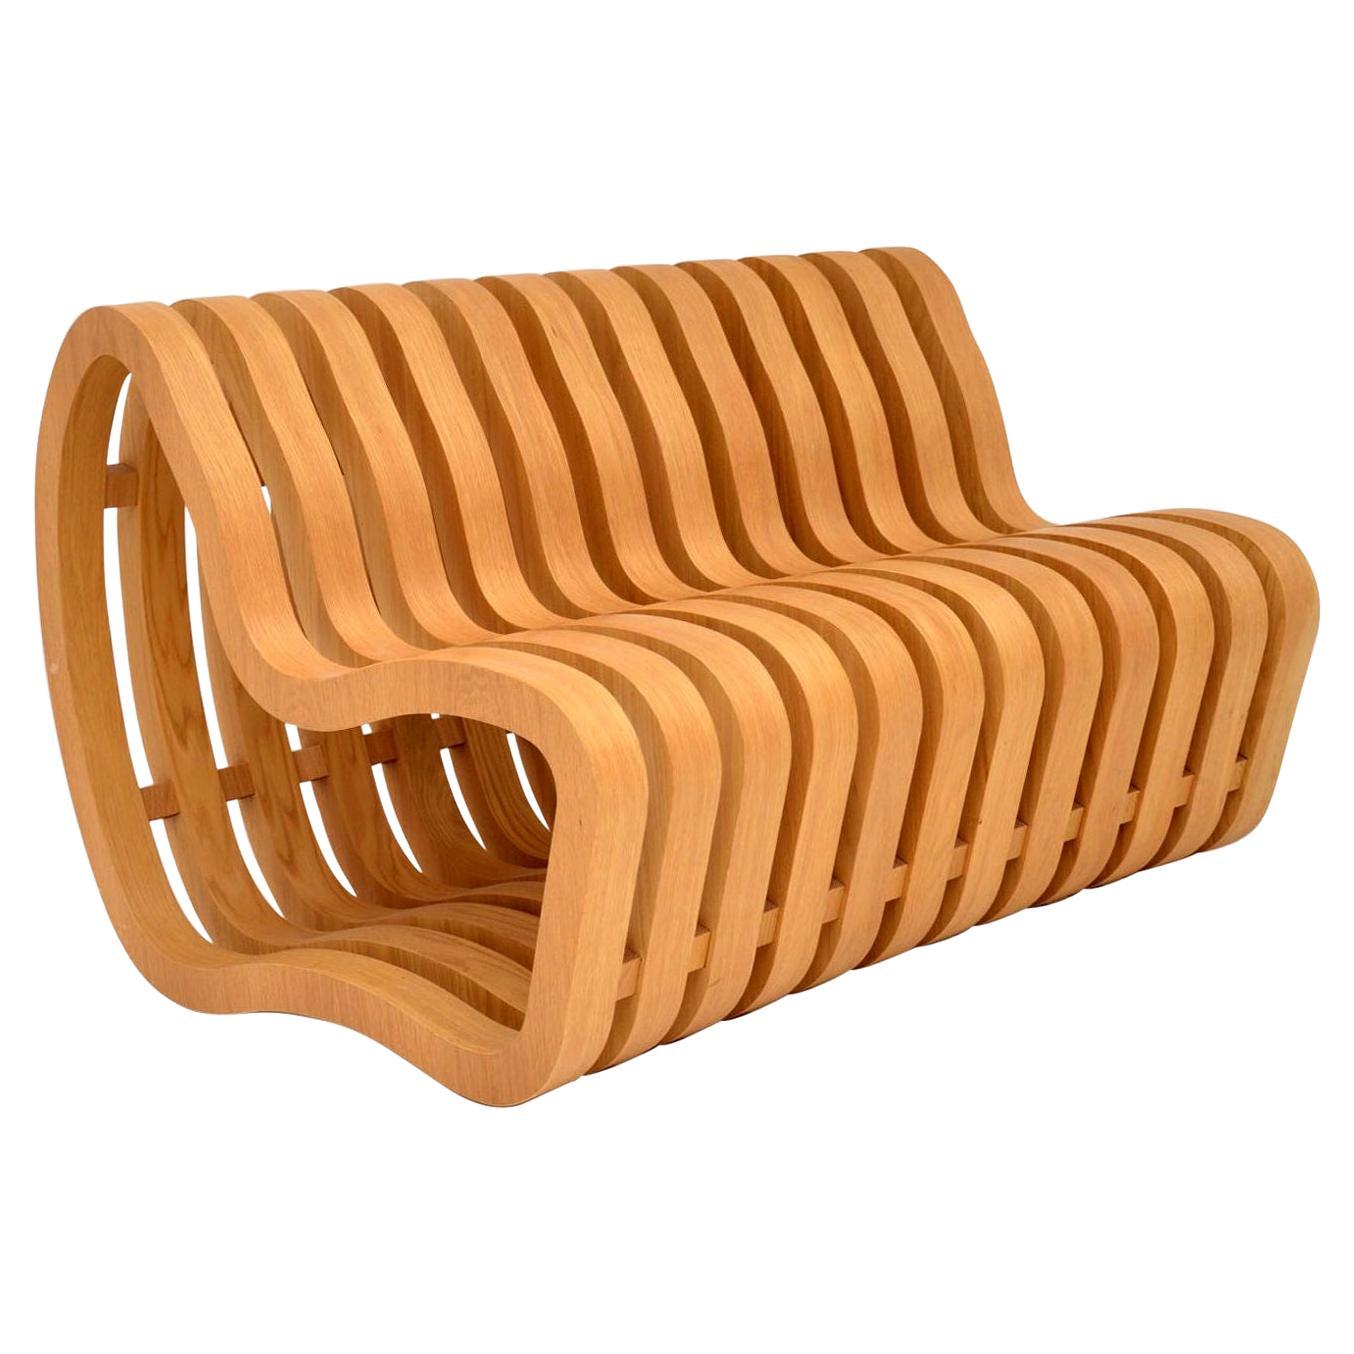 Modernist “Curve Bench” by Nina Moeller Designs For Sale